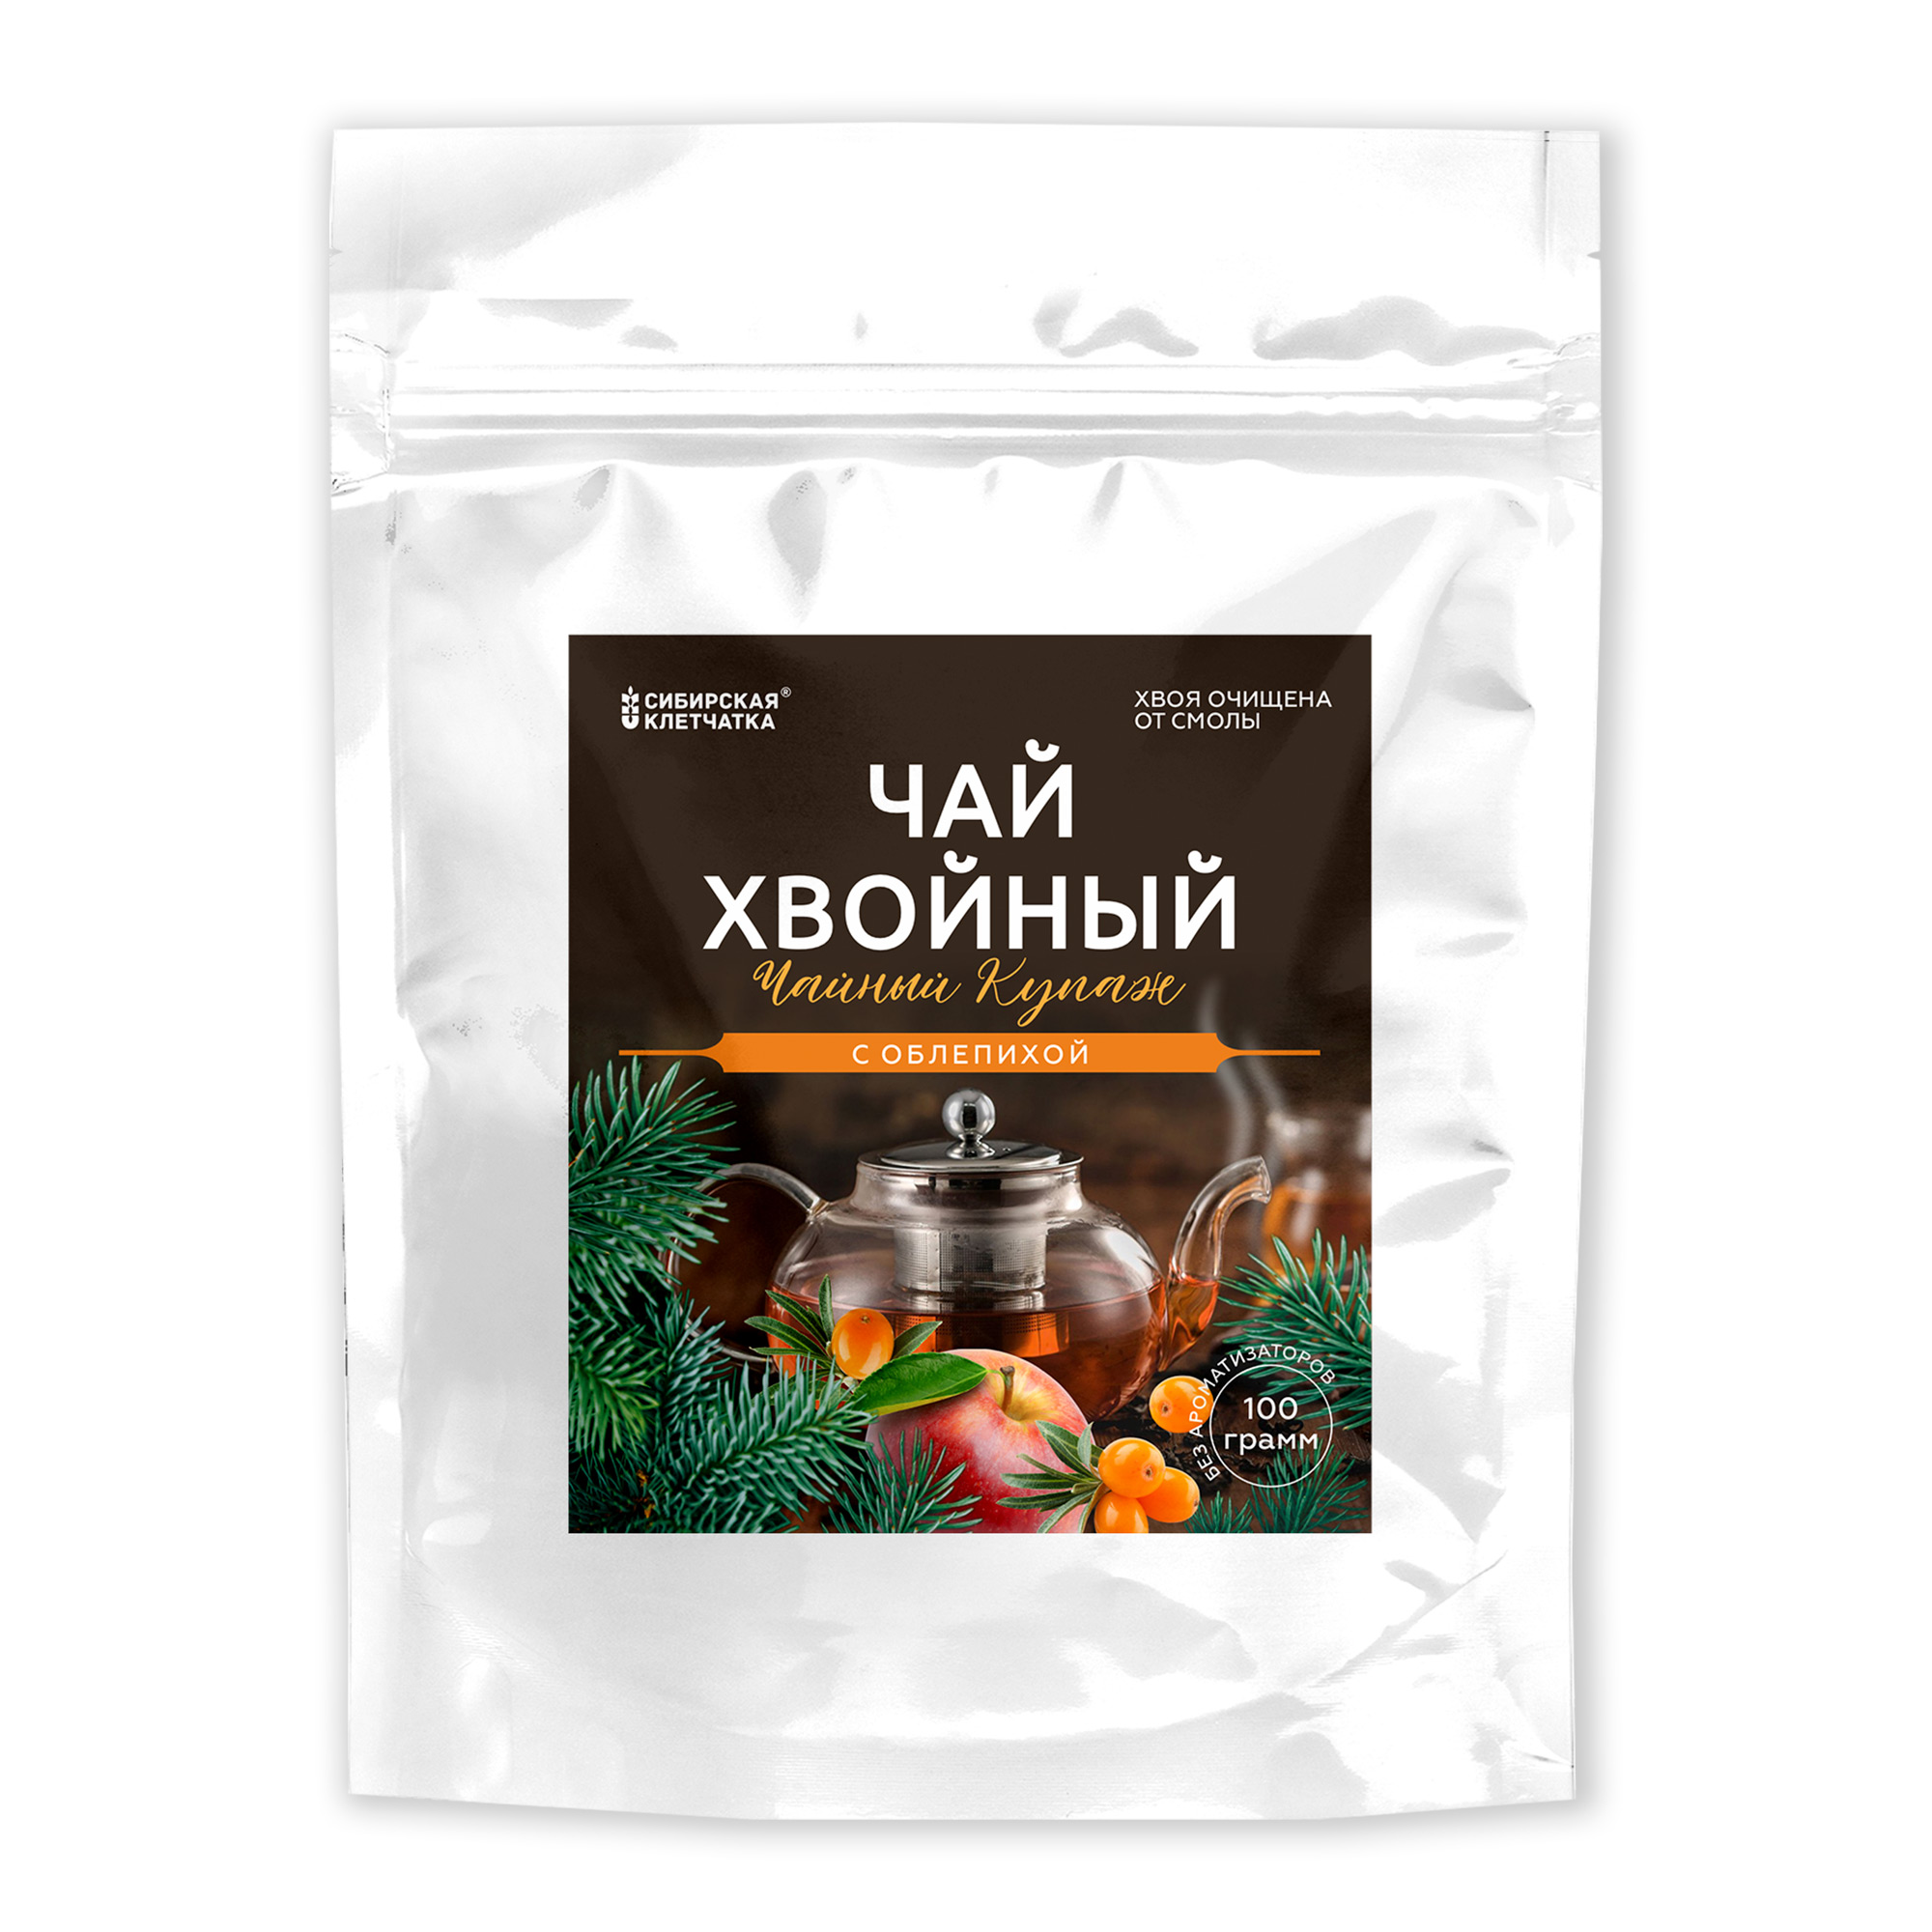 Хвойный чай с облепихой Сибирская клетчатка, 100 г